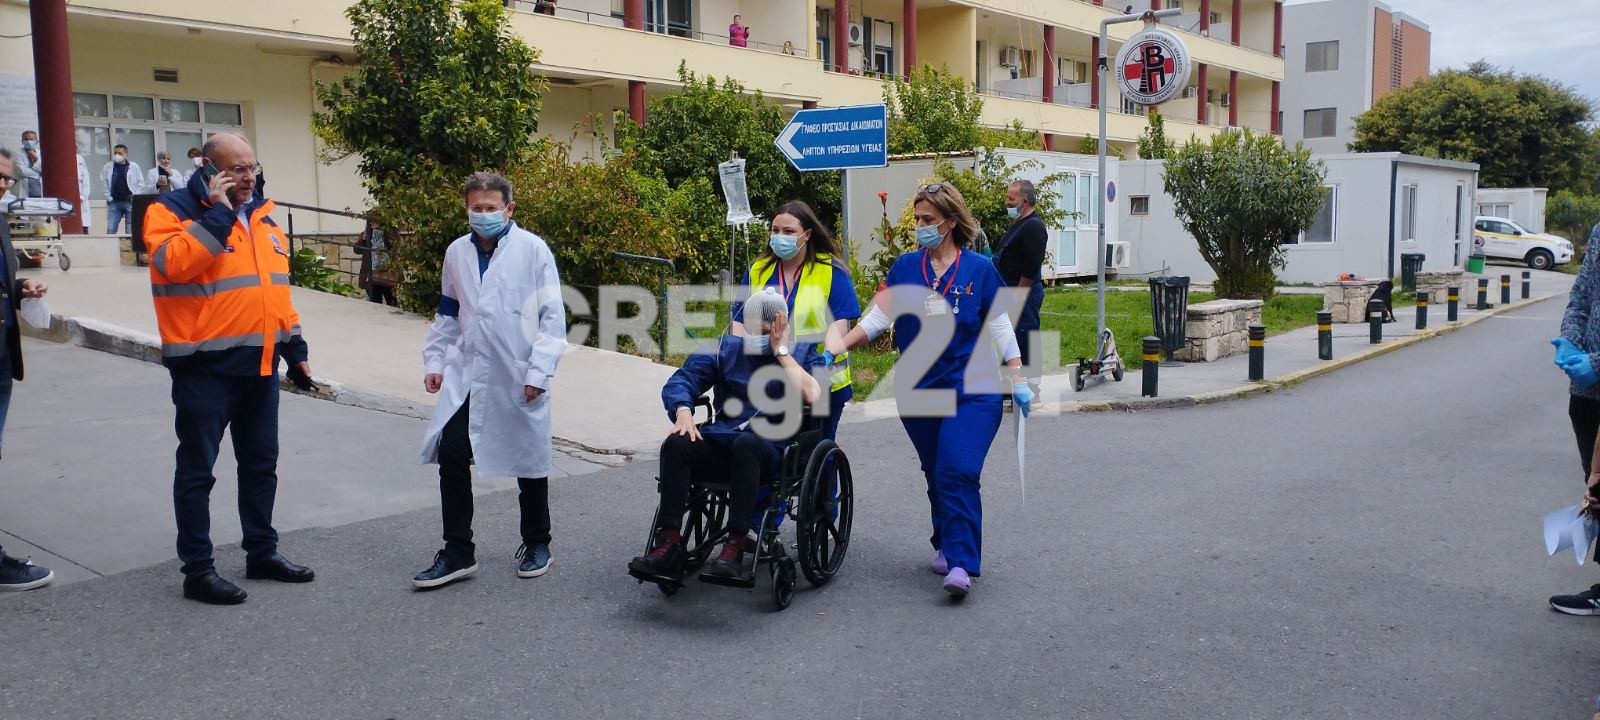 Βενιζέλειο Νοσοκομείο: Εκκένωση μετά από σεισμό και πυρκαγιά – Εικόνες από τη μεγάλη άσκηση ετοιμότητας